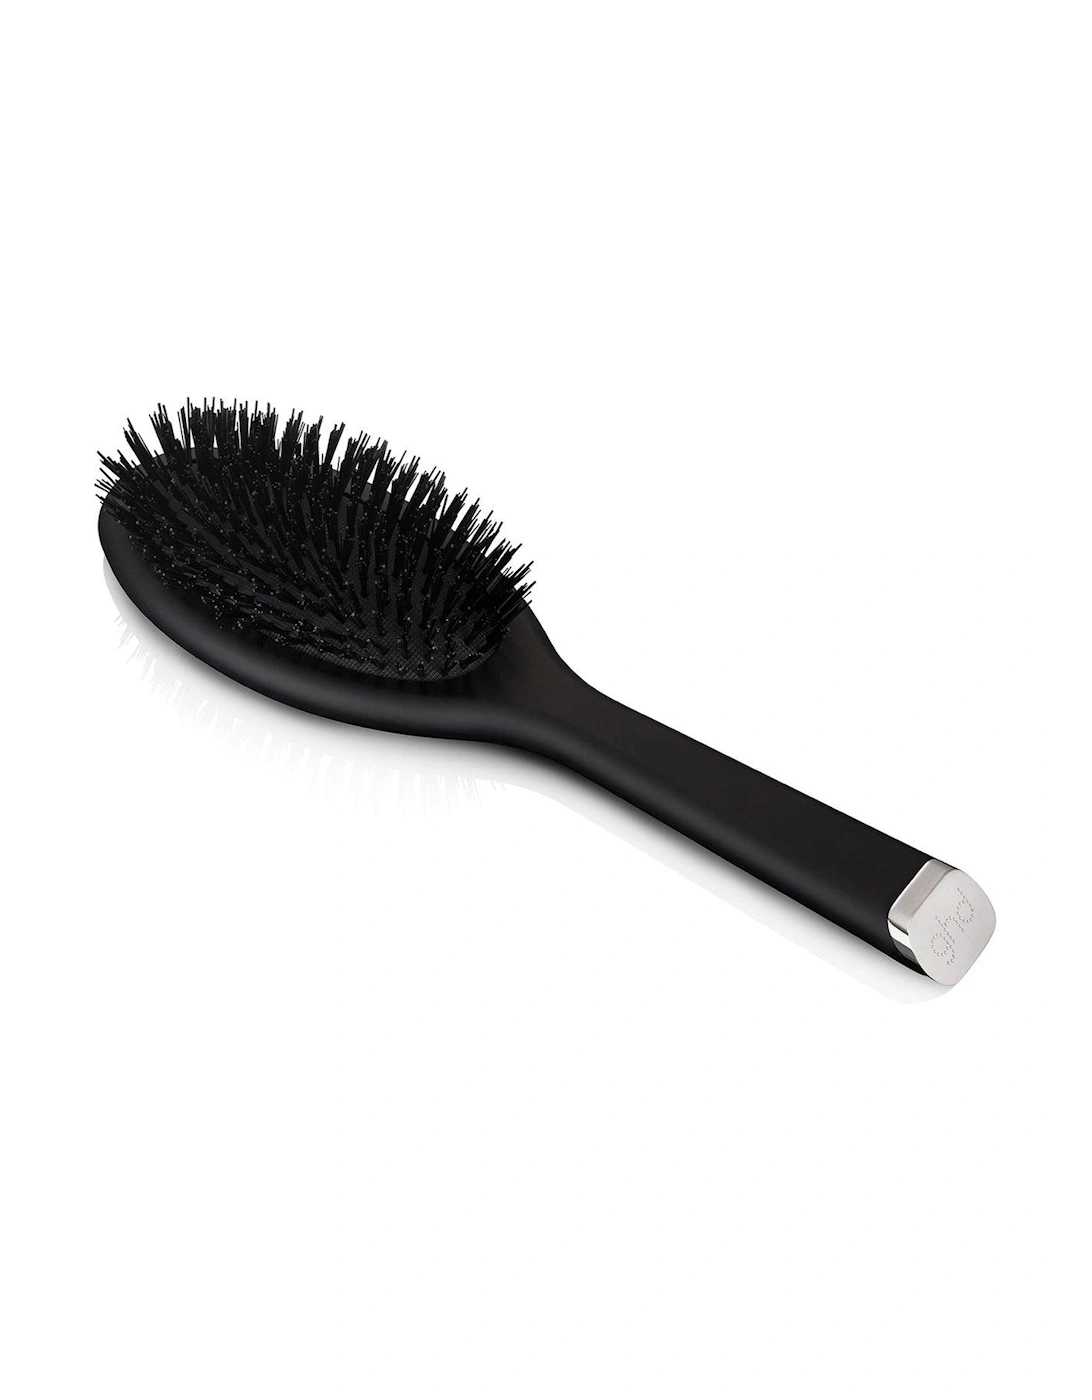 The Dresser - Oval Hair Brush, 2 of 1